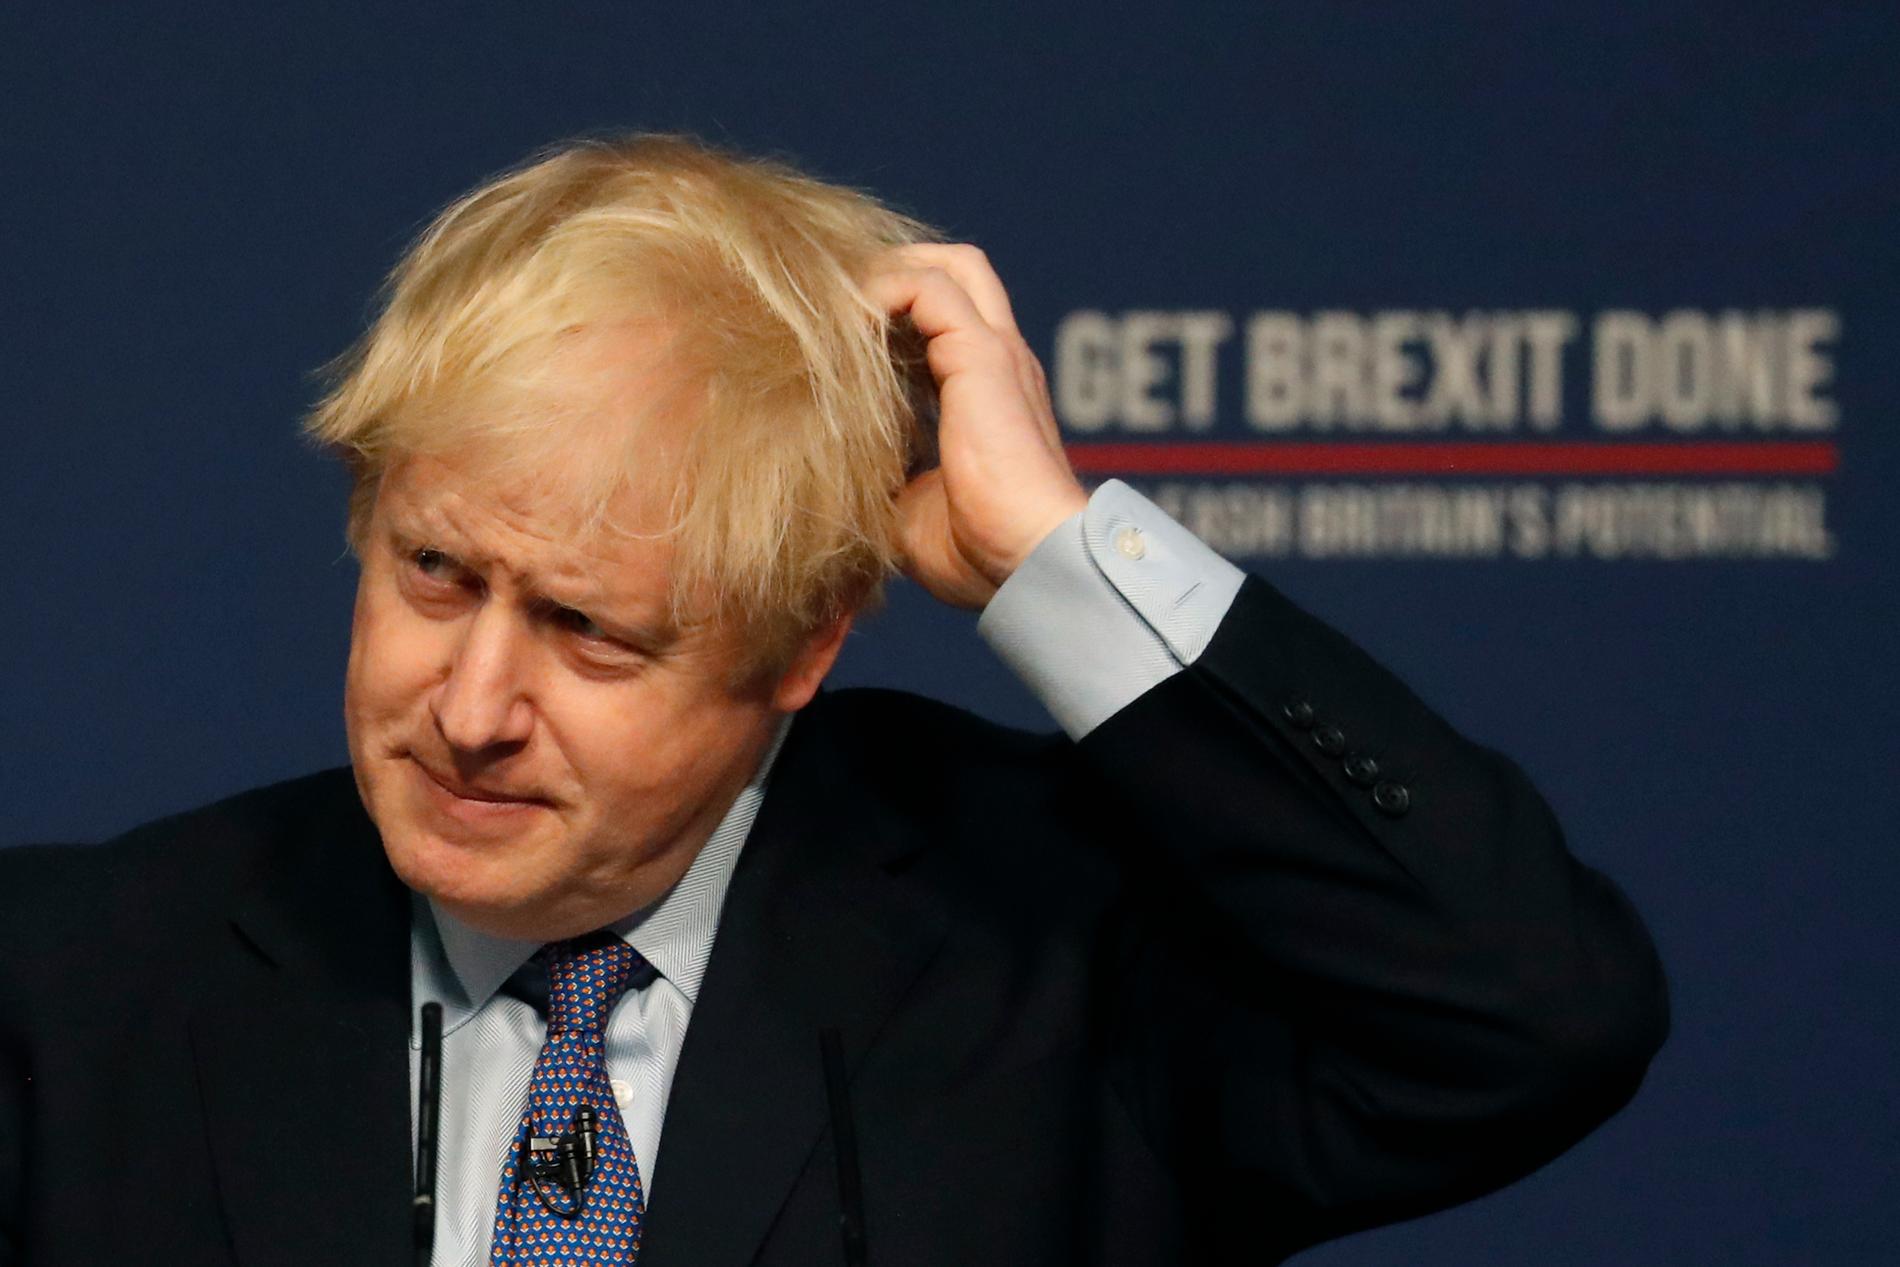 Konservativa partiets ledning över Labour har minskat, enligt två opinionsmätningar. Storbritannien går till parlamentsval den 12 december. På bilden syns den konservative premiärministern Boris Johnson.